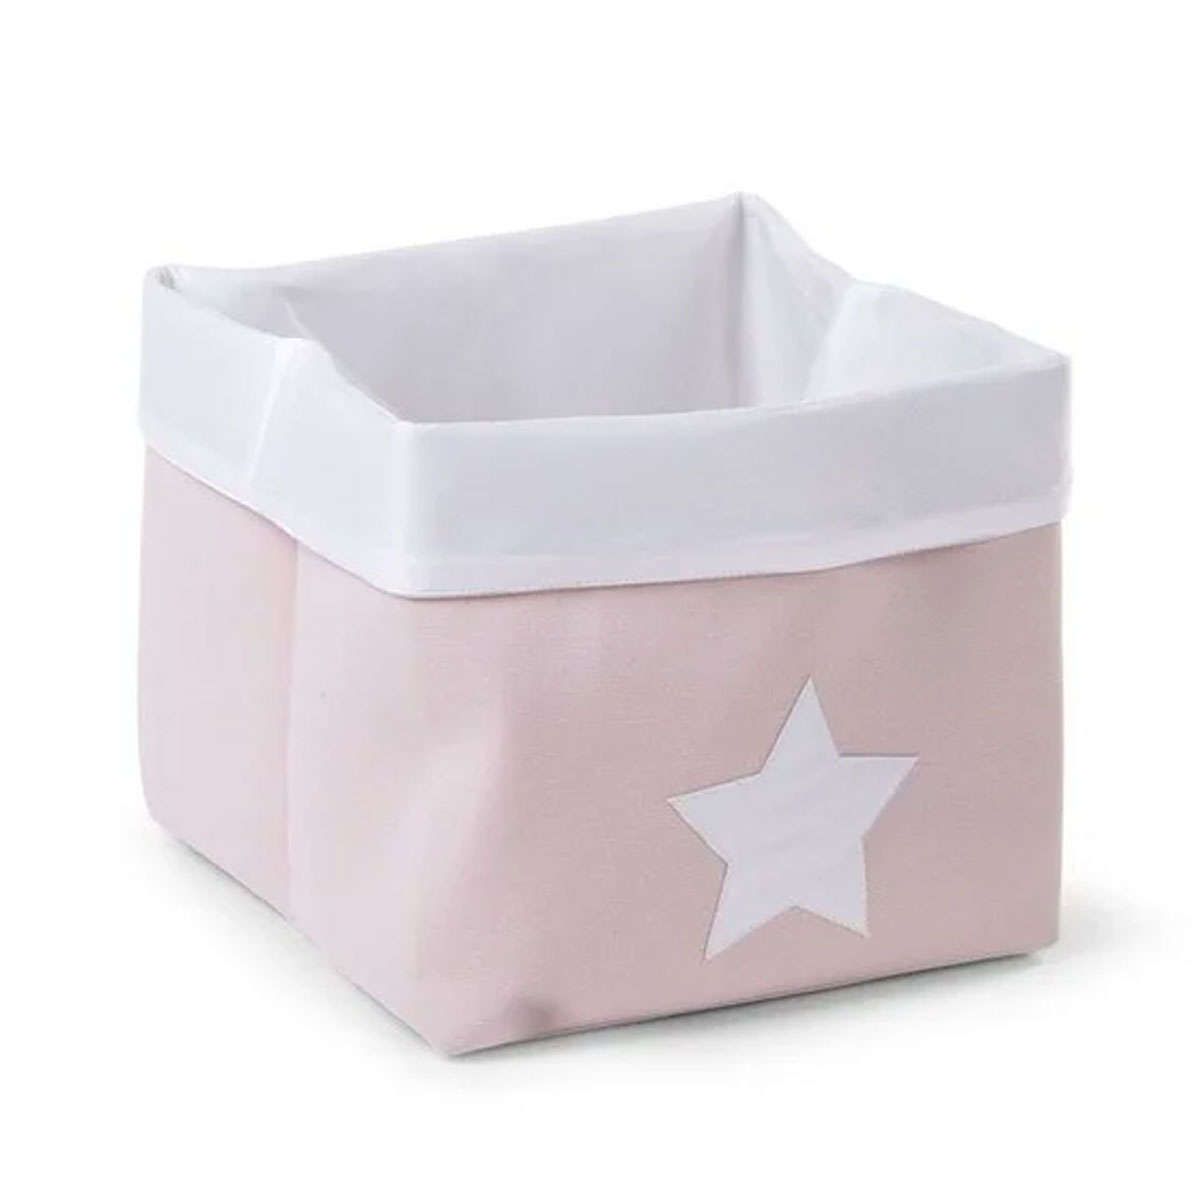 Κουτί αποθήκευσης καμβάς 32X32X29cm pink-white Childhome